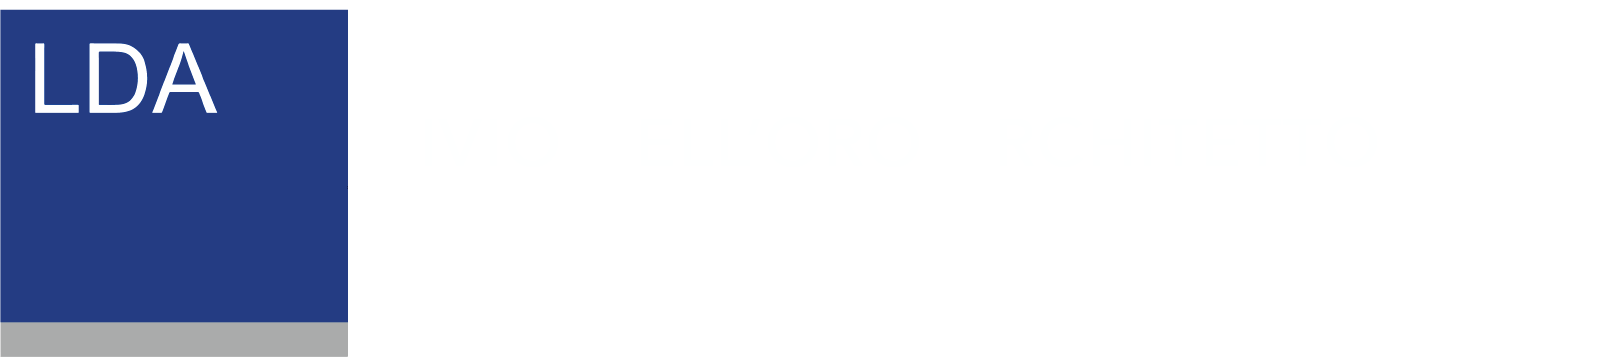 Studio LDA - LIVIO DELLORO ARCHITETTO